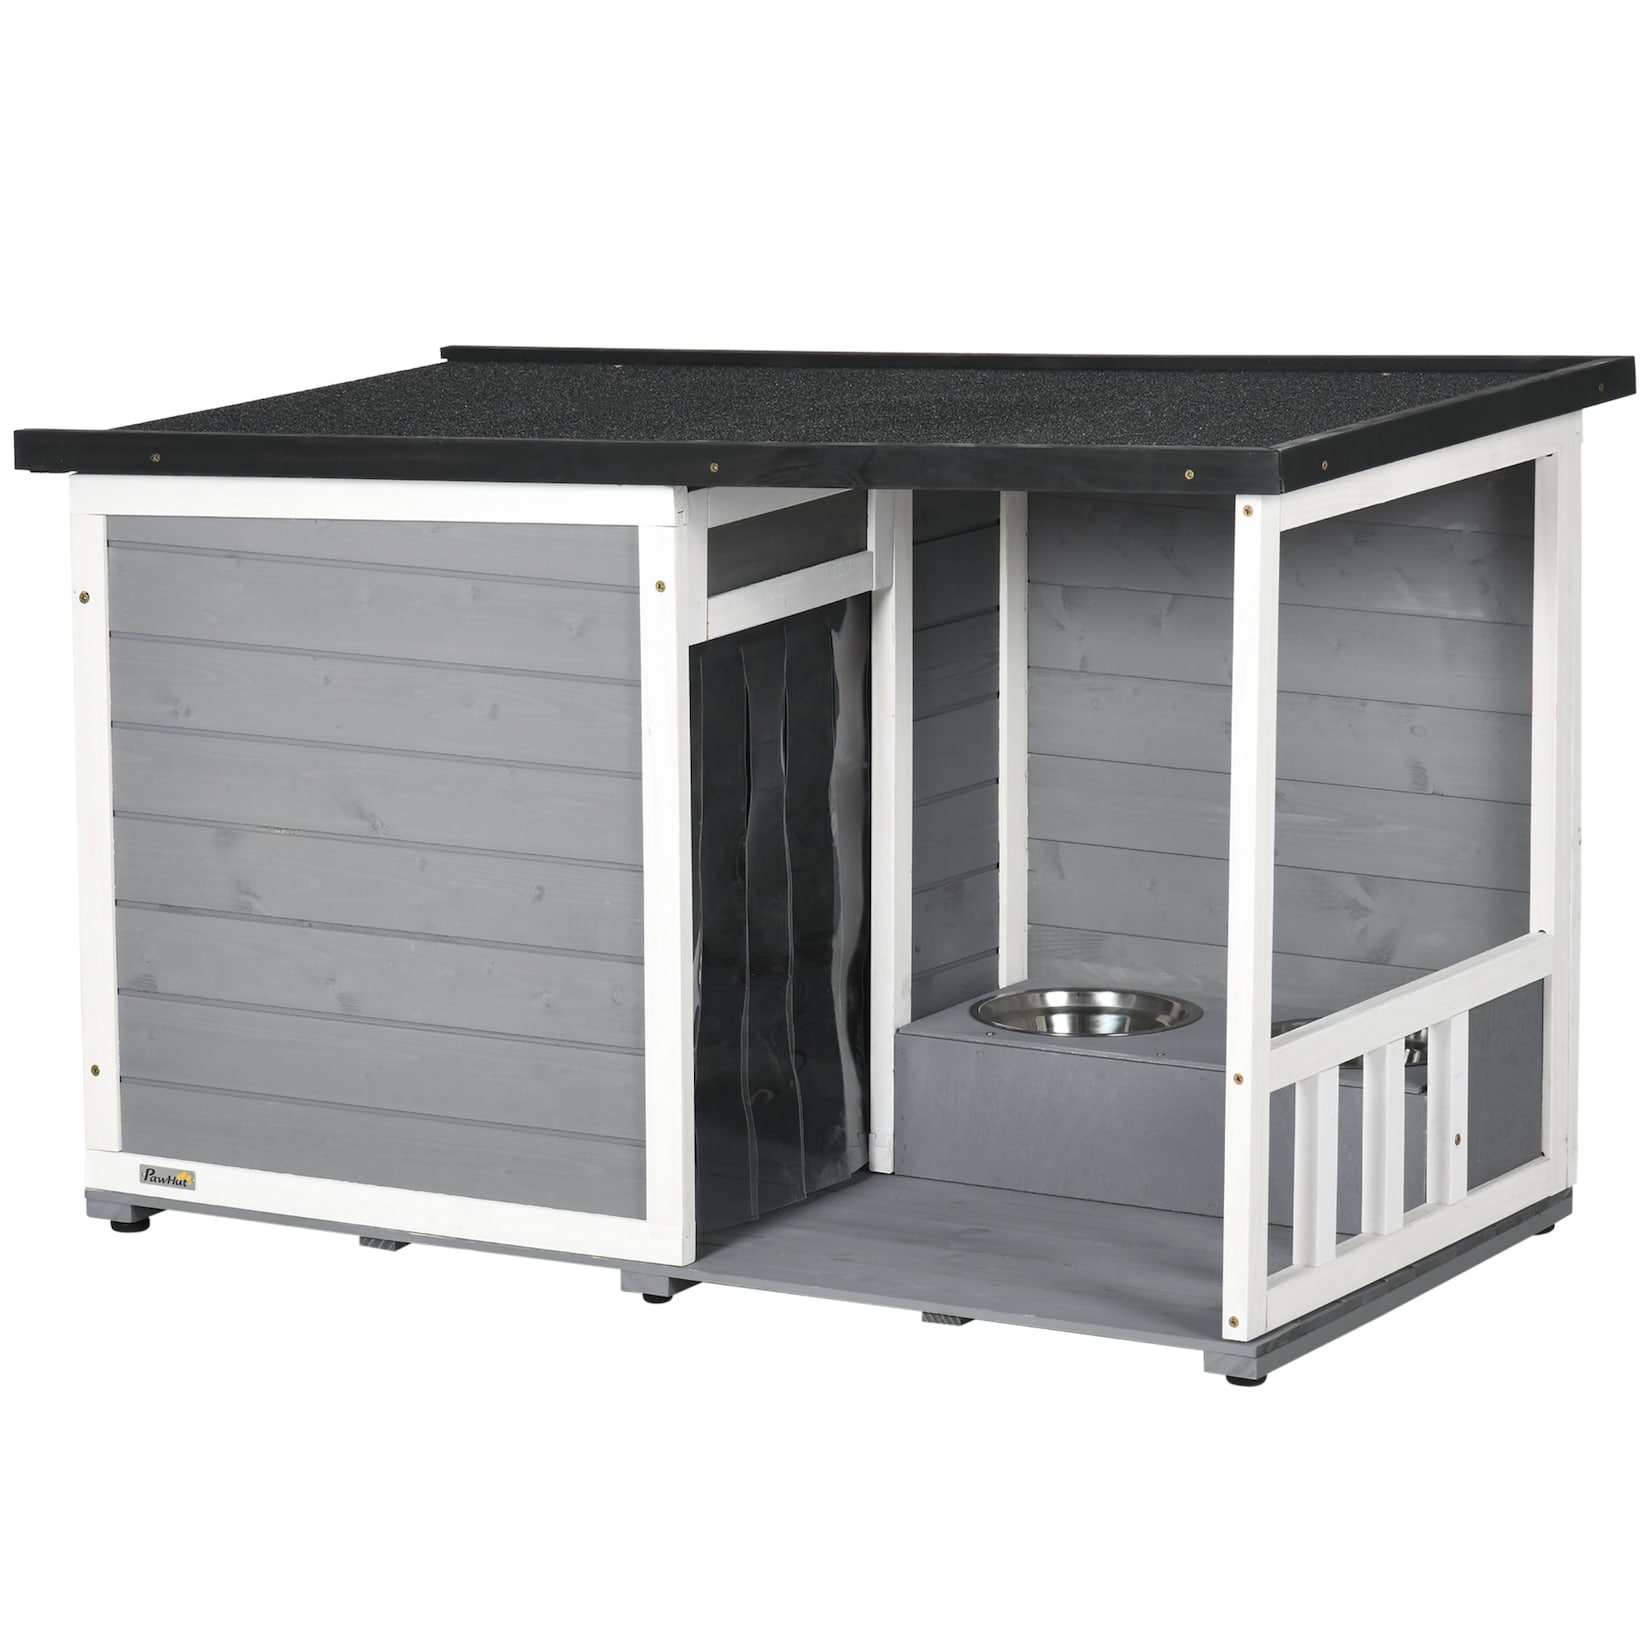 PawHut Hundehütte mit Fressnäpfen grau, weiß 103L x 62B x 66H cm hundehaus mit schüsseln kleintierhaus asphaltdach erhöhtes design